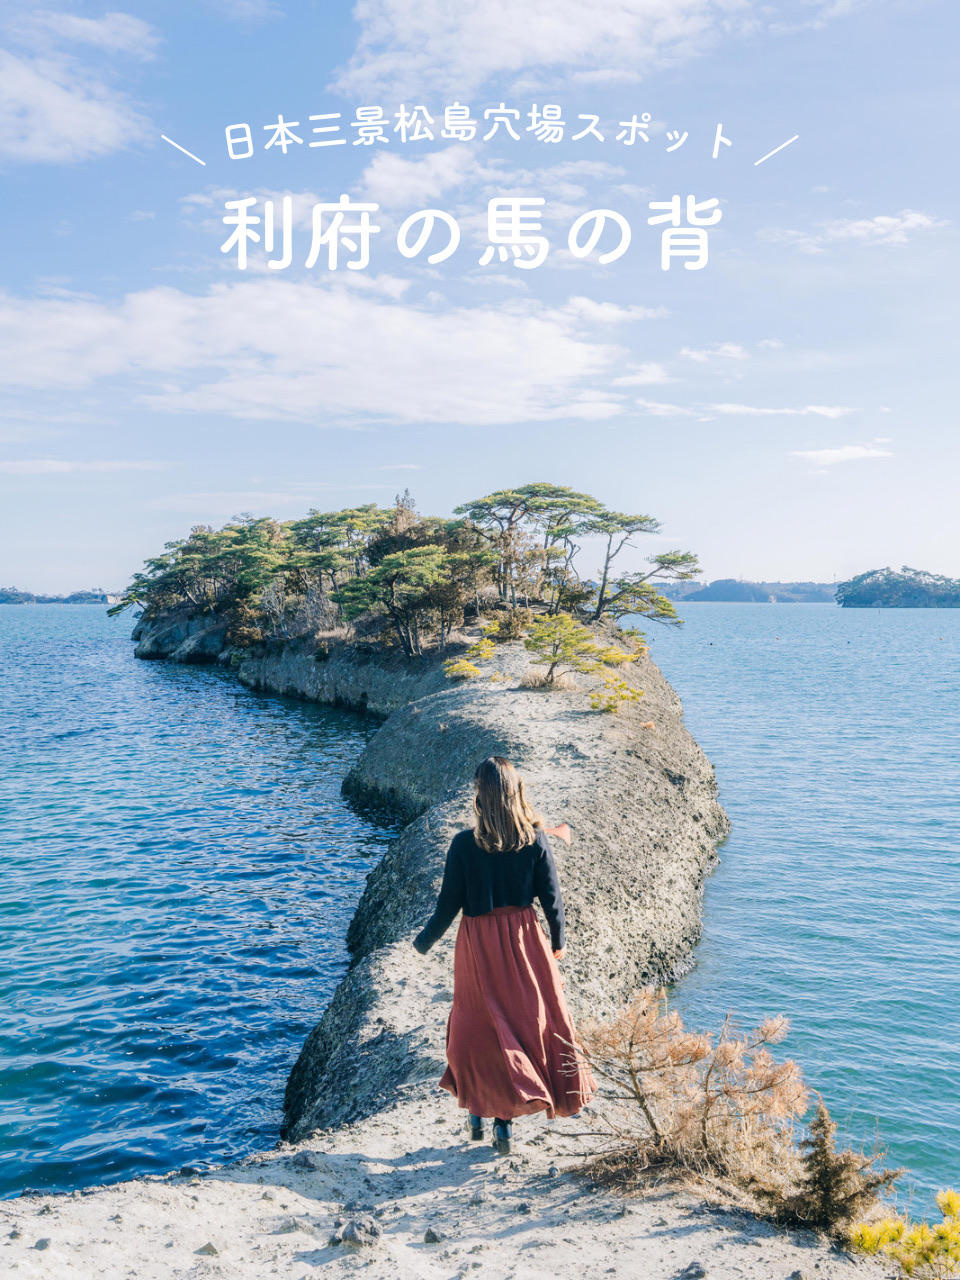 [宫城]你知道吗? ☺️日本三景松岛的绝景景点🏖️☀️